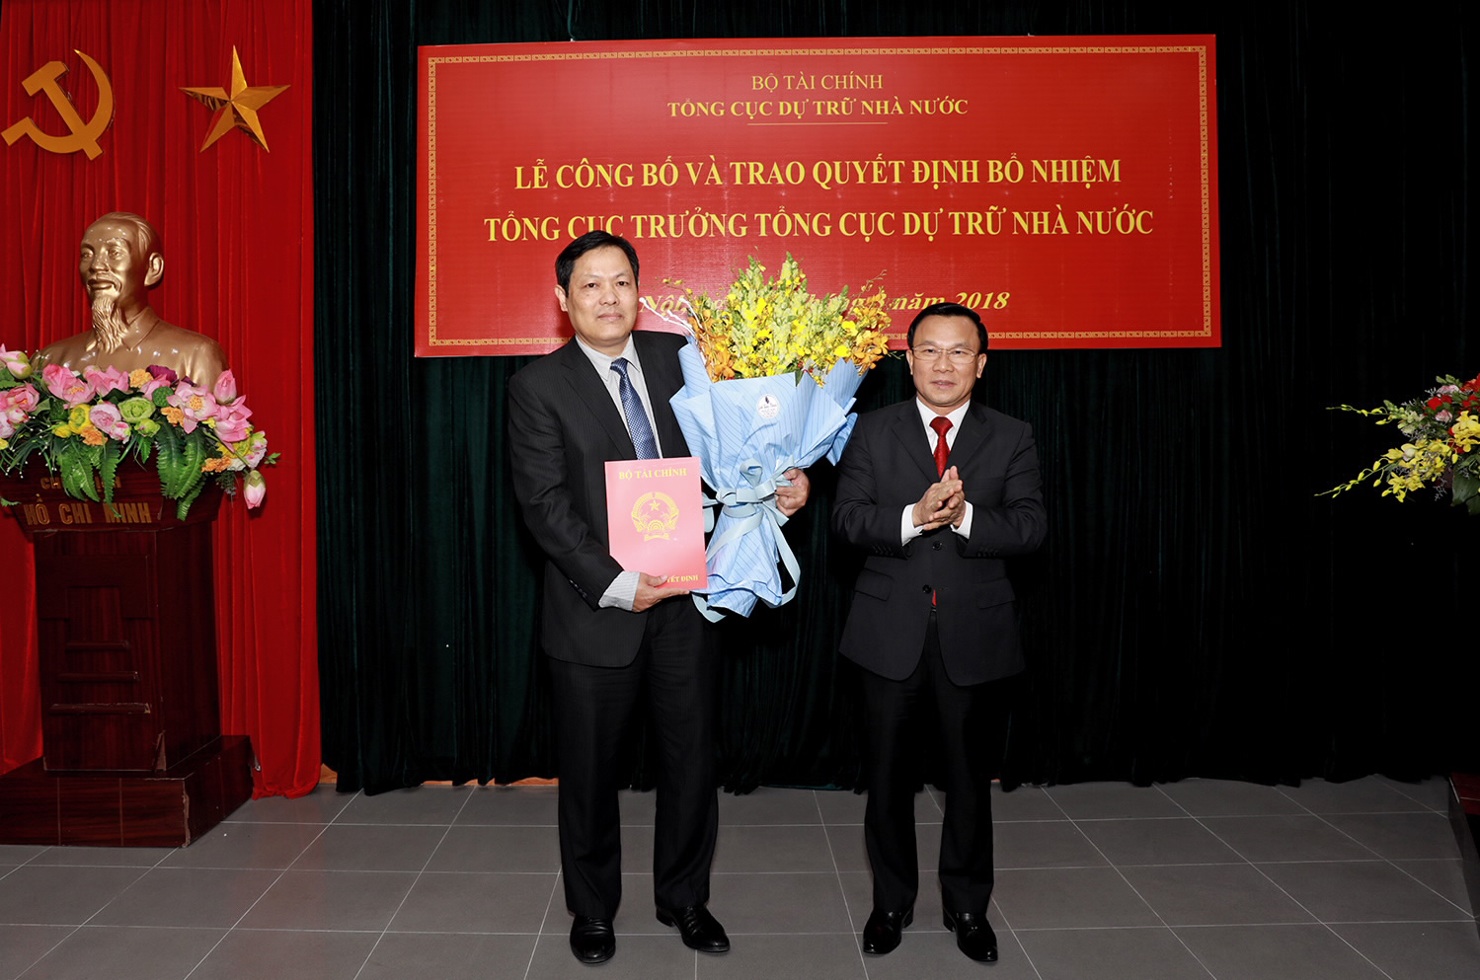 Thứ trưởng Bộ Tài chính Trần Văn Hiếu (bên phải) trao Quyết định bổ nhiệm Tổng cục trưởng Tổng cục Dự trữ Nhà nước cho ông Đỗ Việt Đức. 